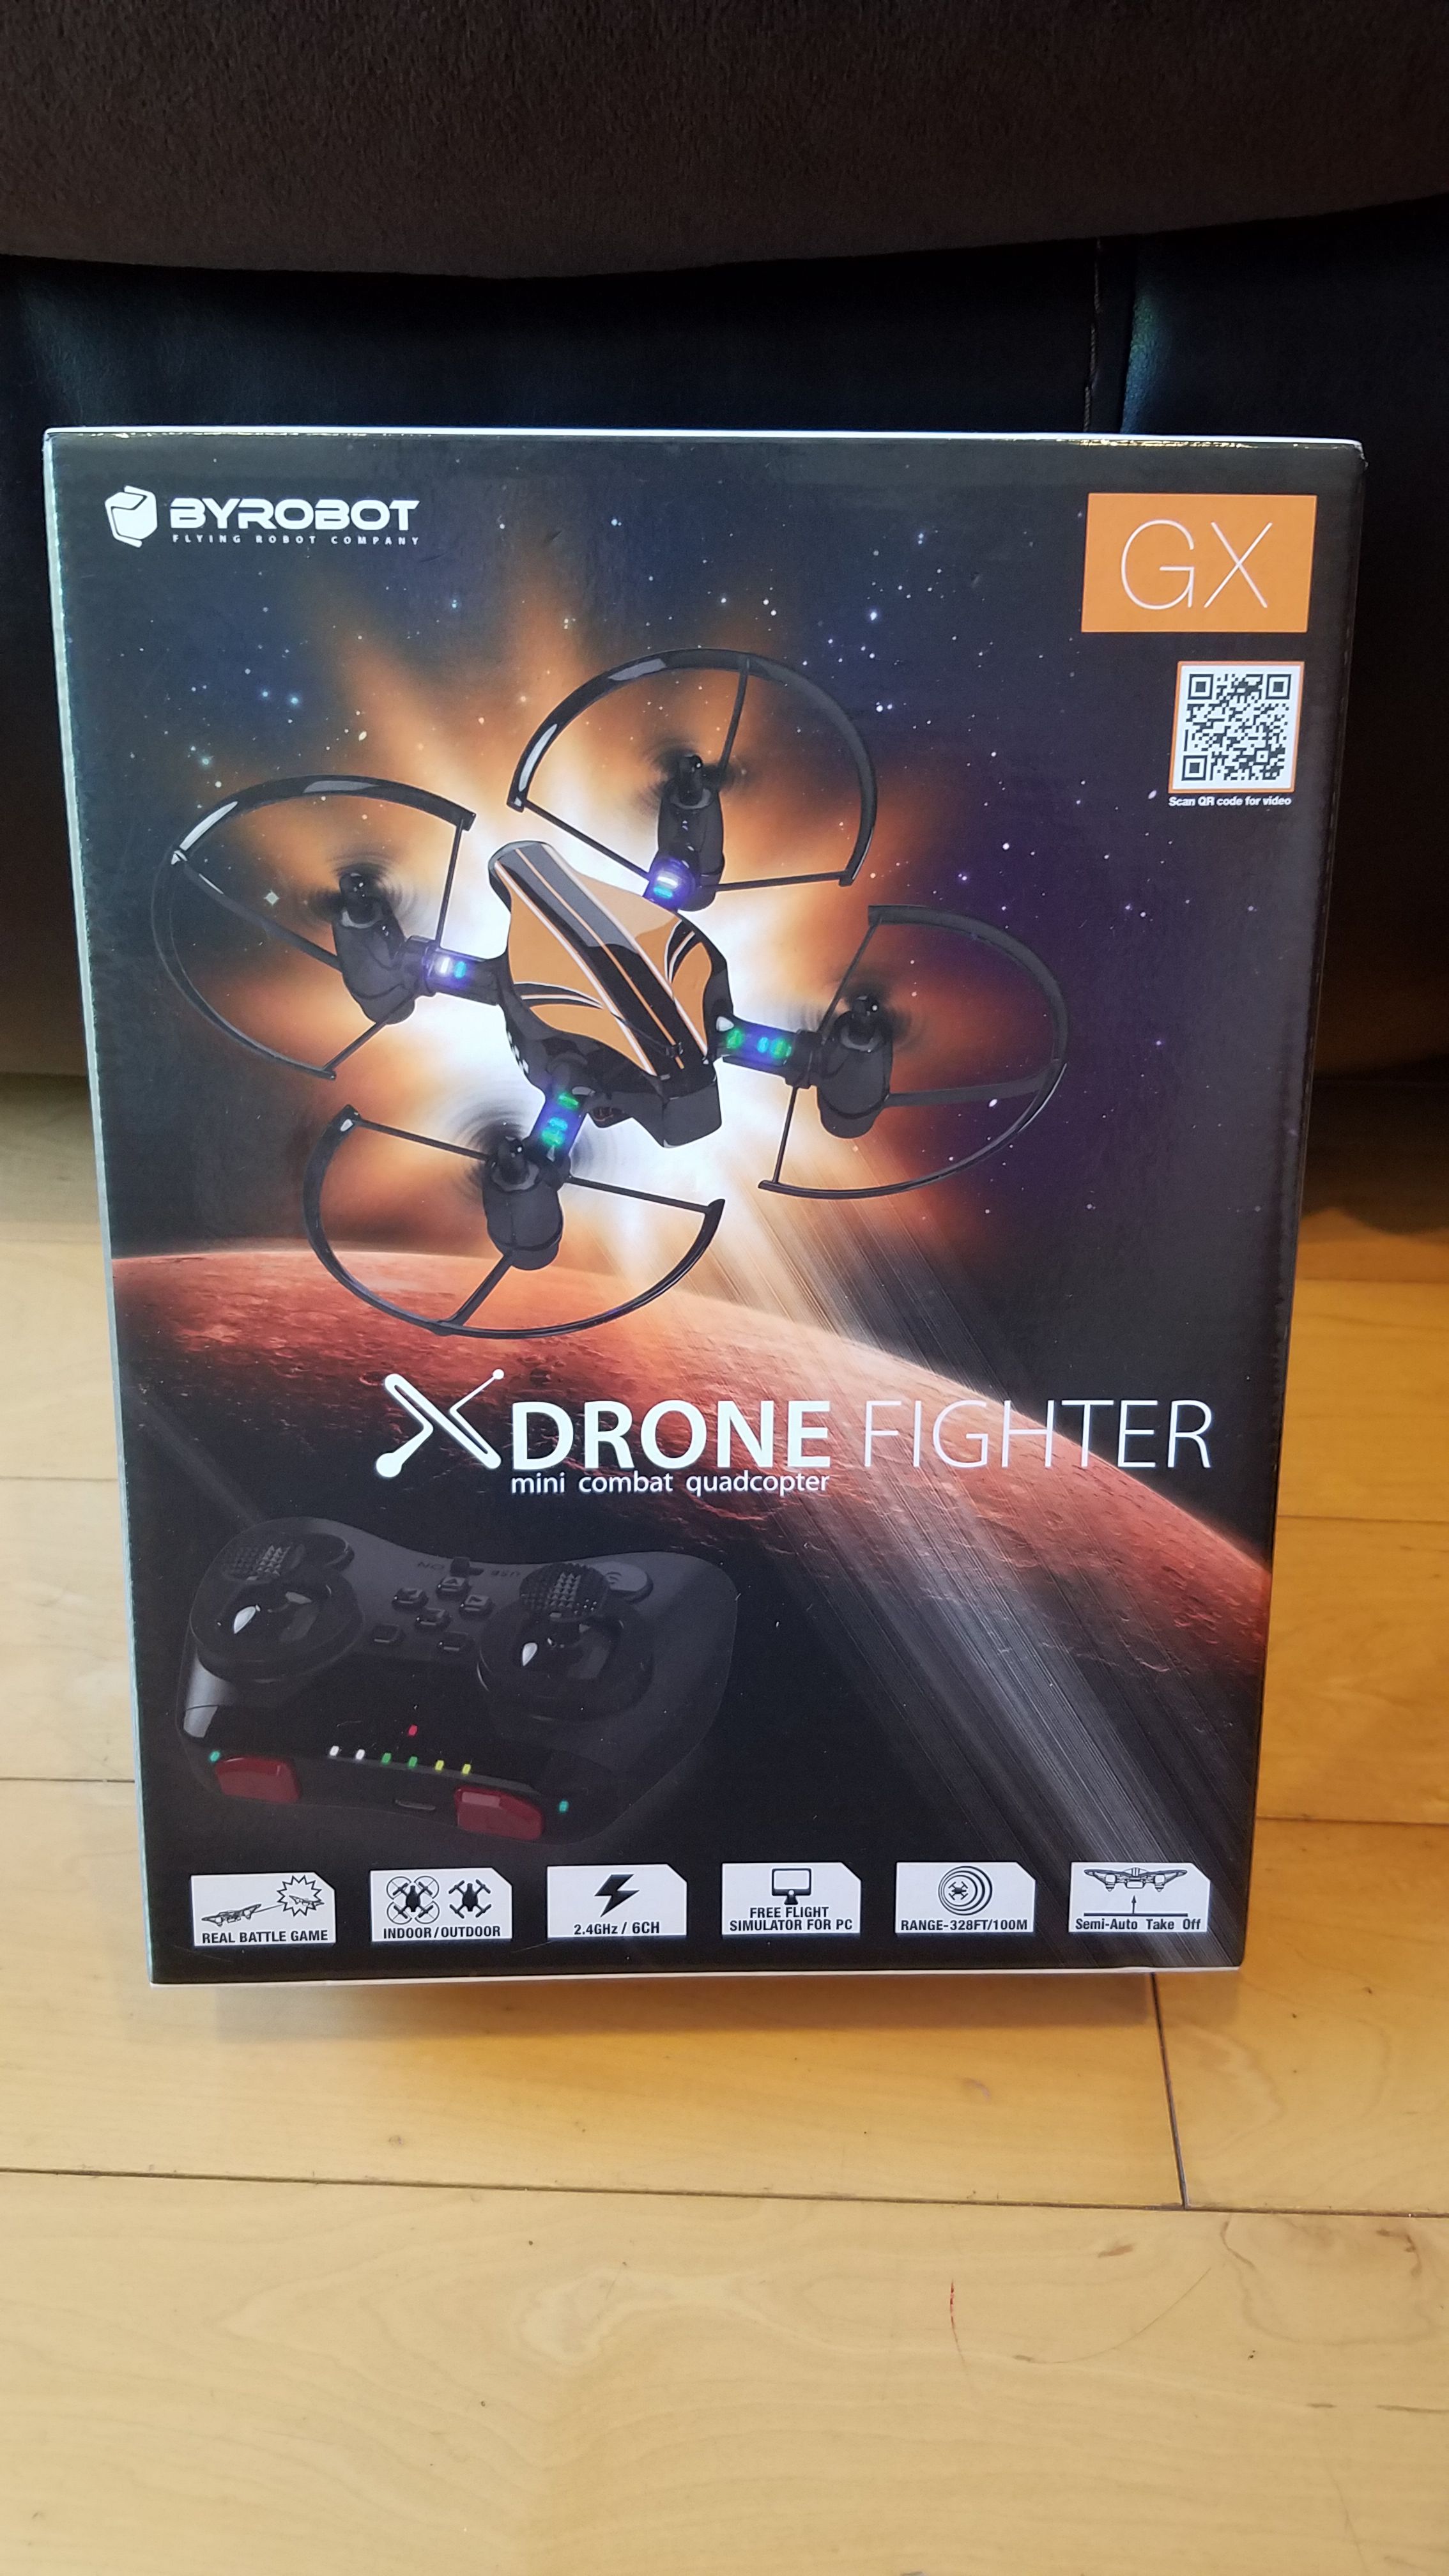 Drone fighter mini combat quadcopter - BRAND NEW! - in Santa Monica